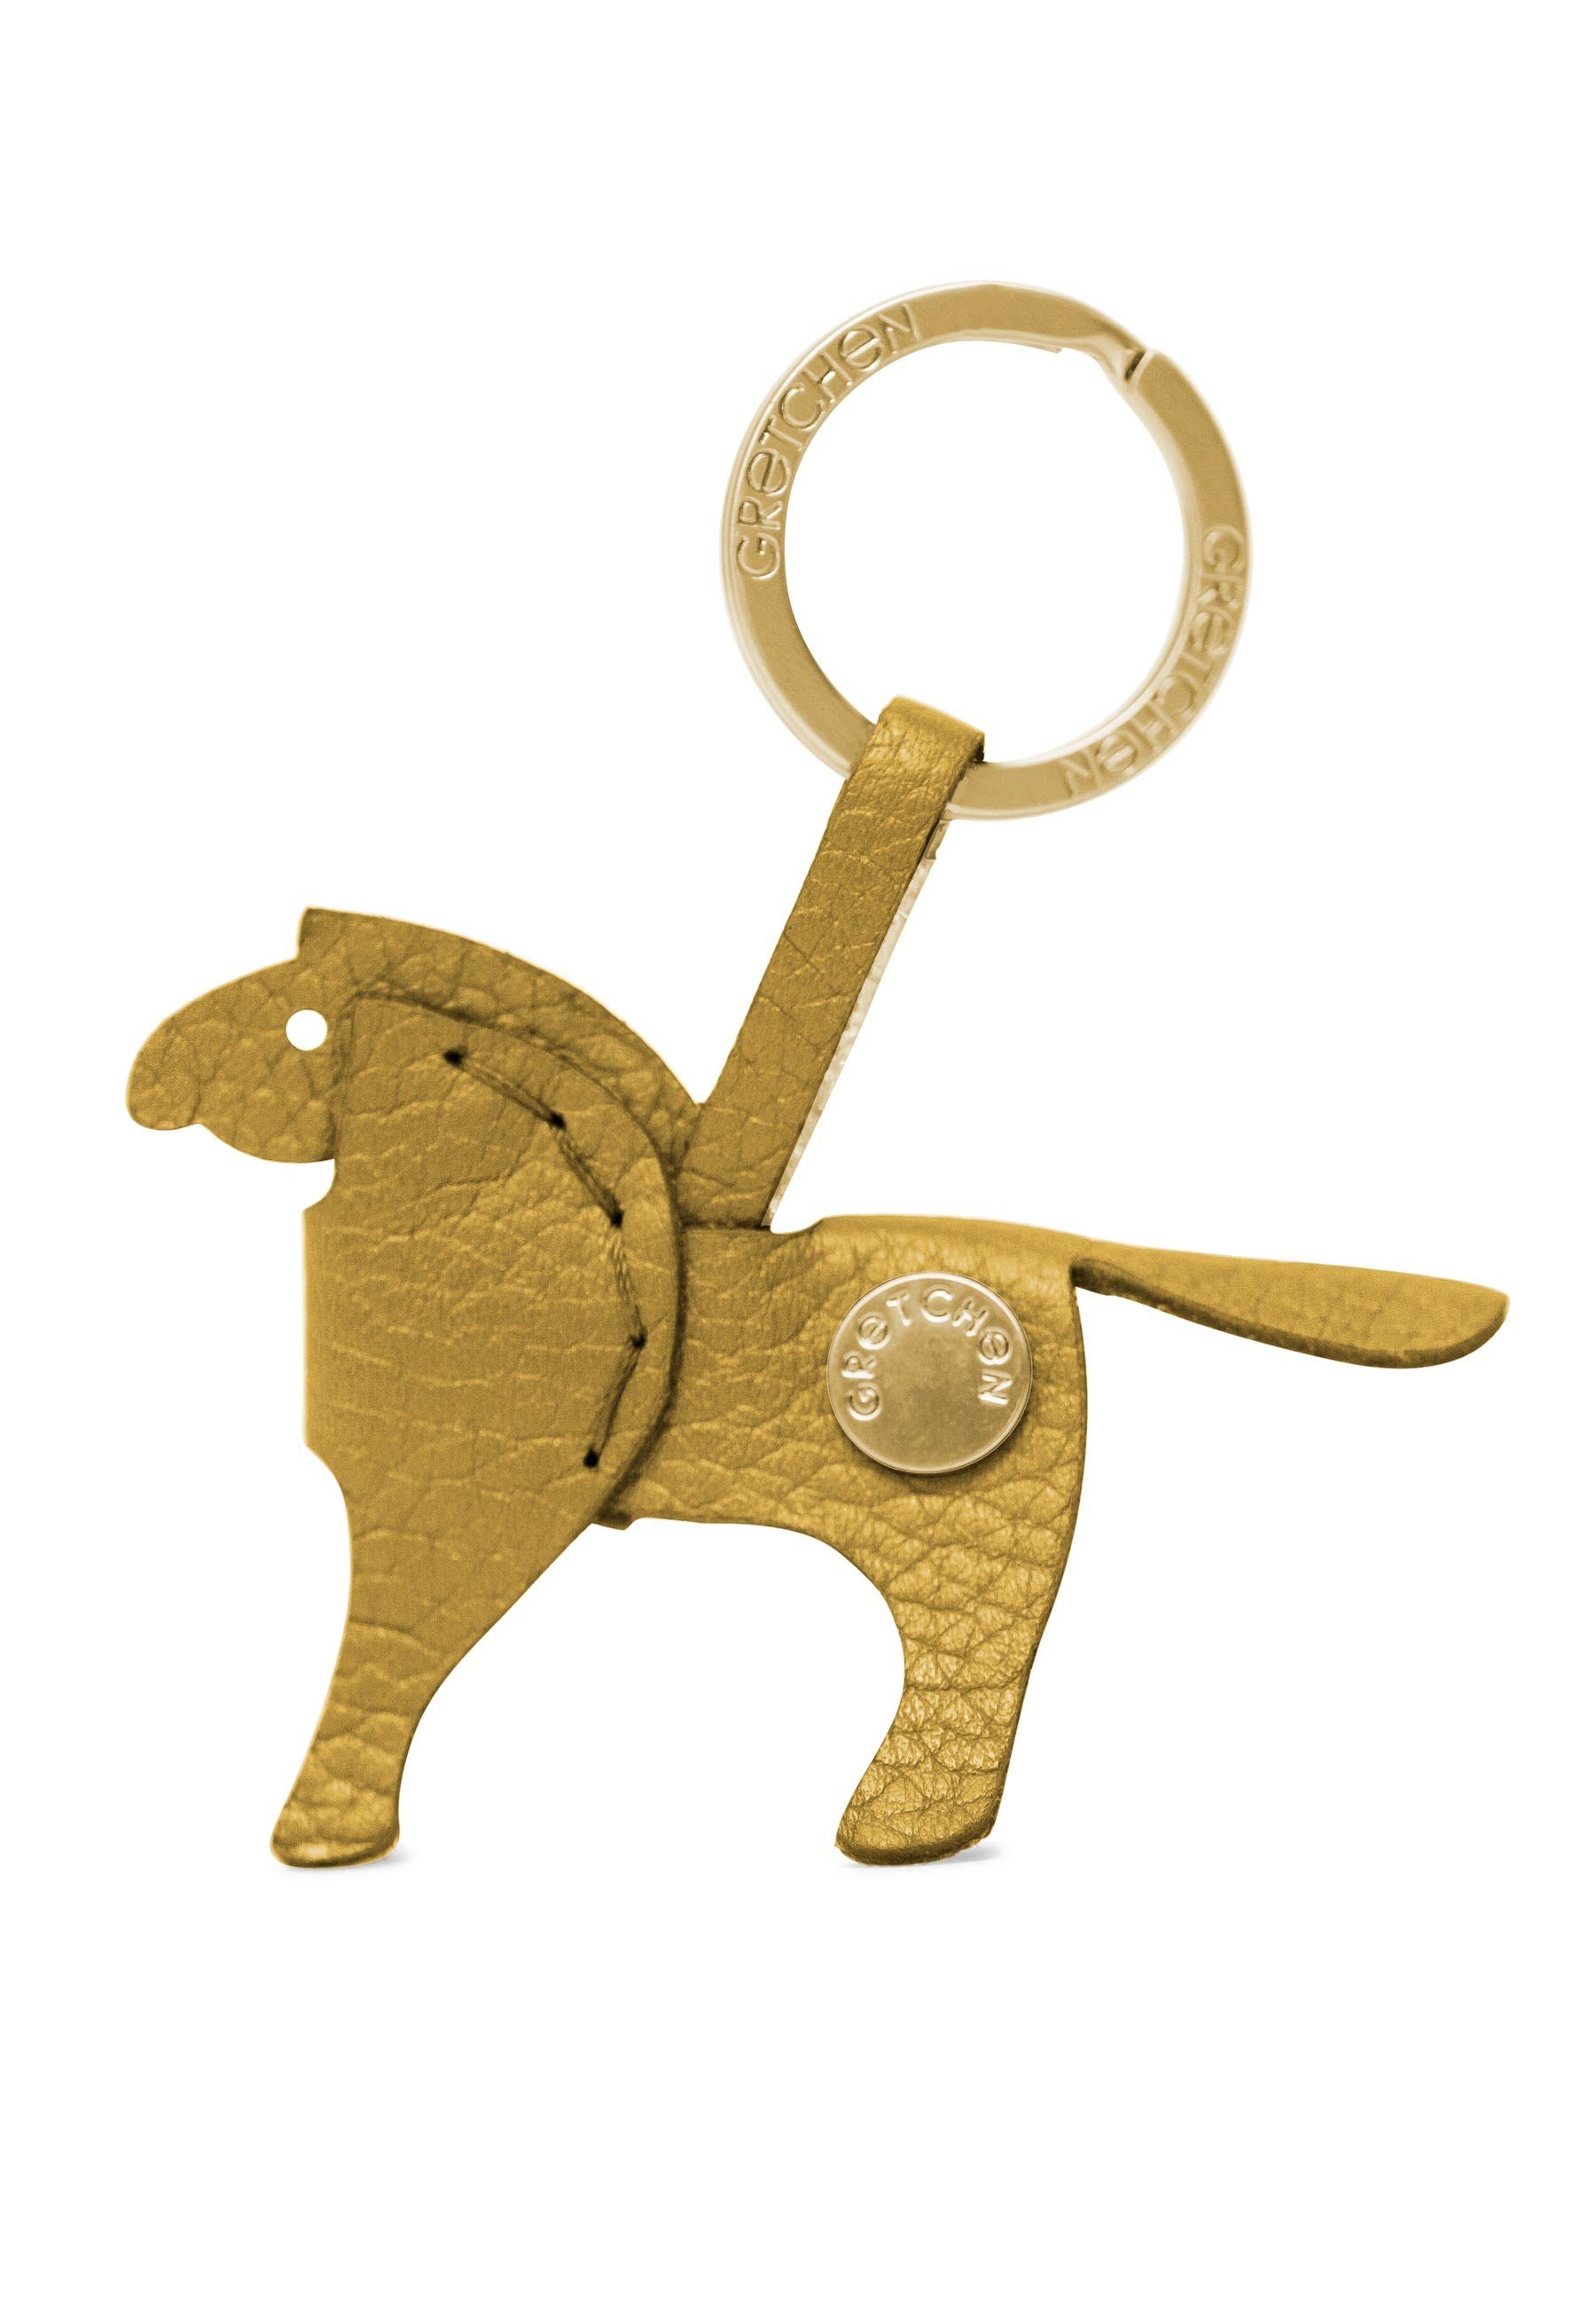 GRETCHEN Schlüsselanhänger Pony Keyring, aus italienischem Kalbsleder gelb-goldfarben